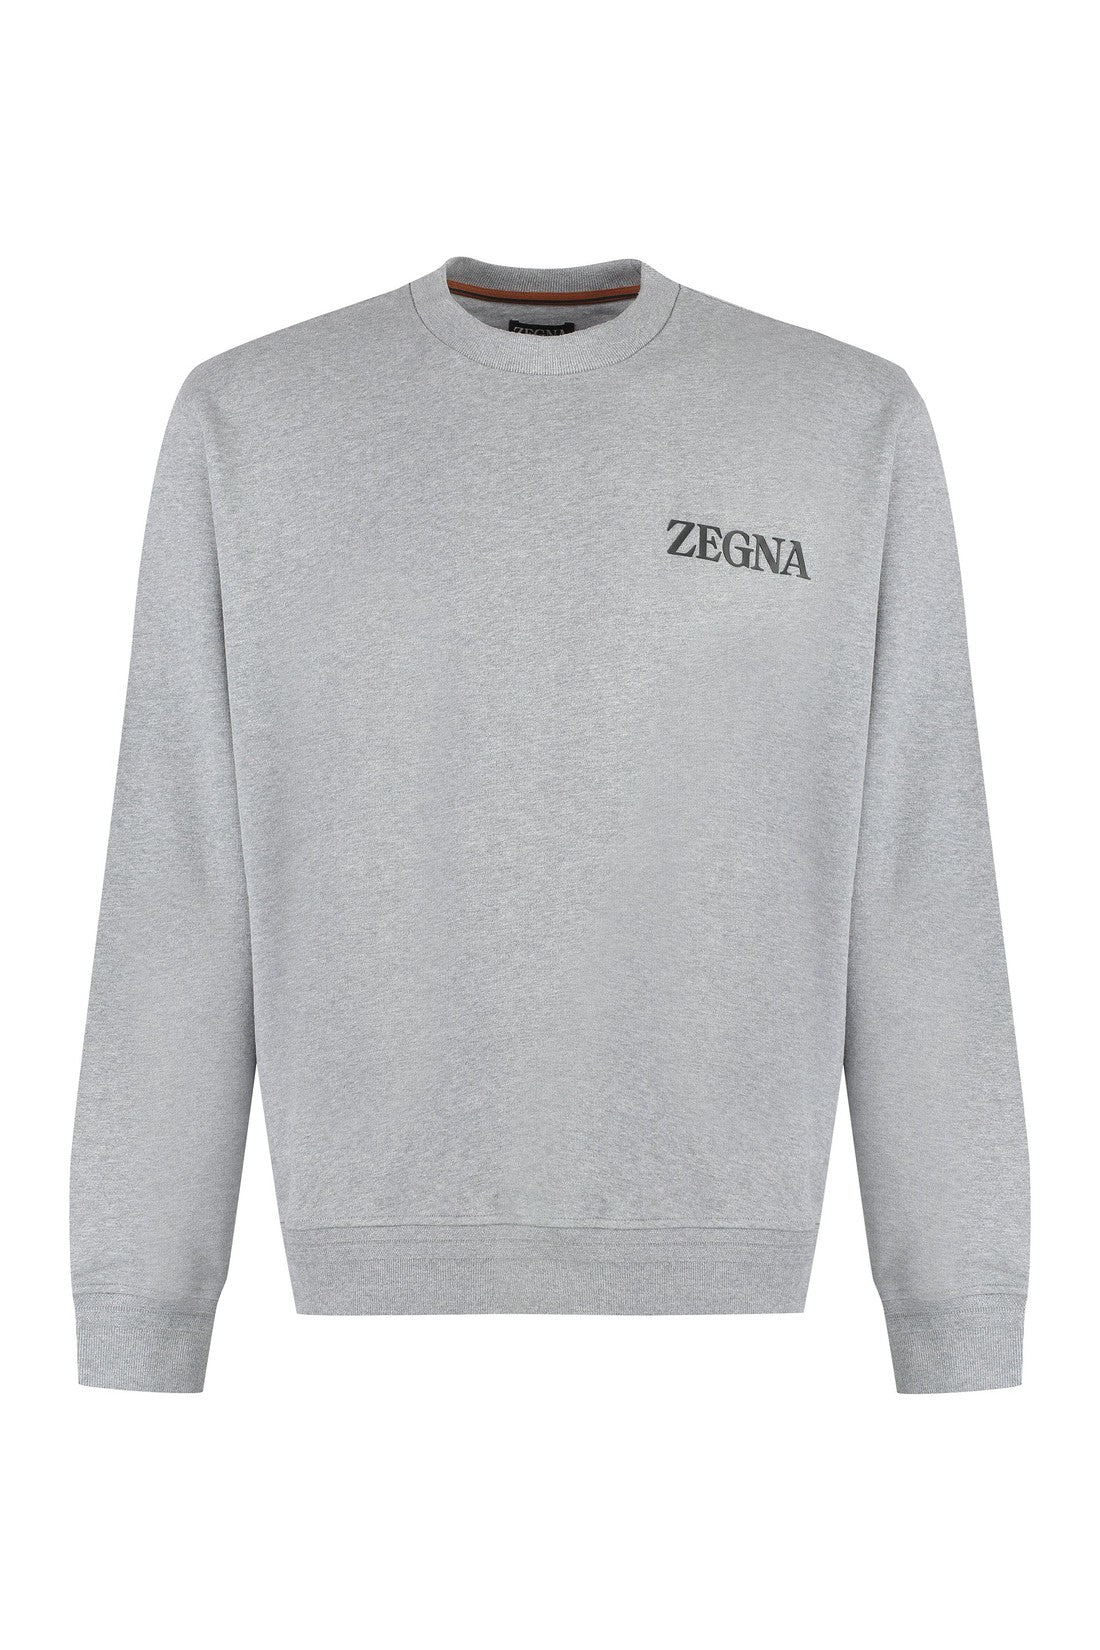 Zegna-OUTLET-SALE-Cotton crew-neck sweatshirt-ARCHIVIST